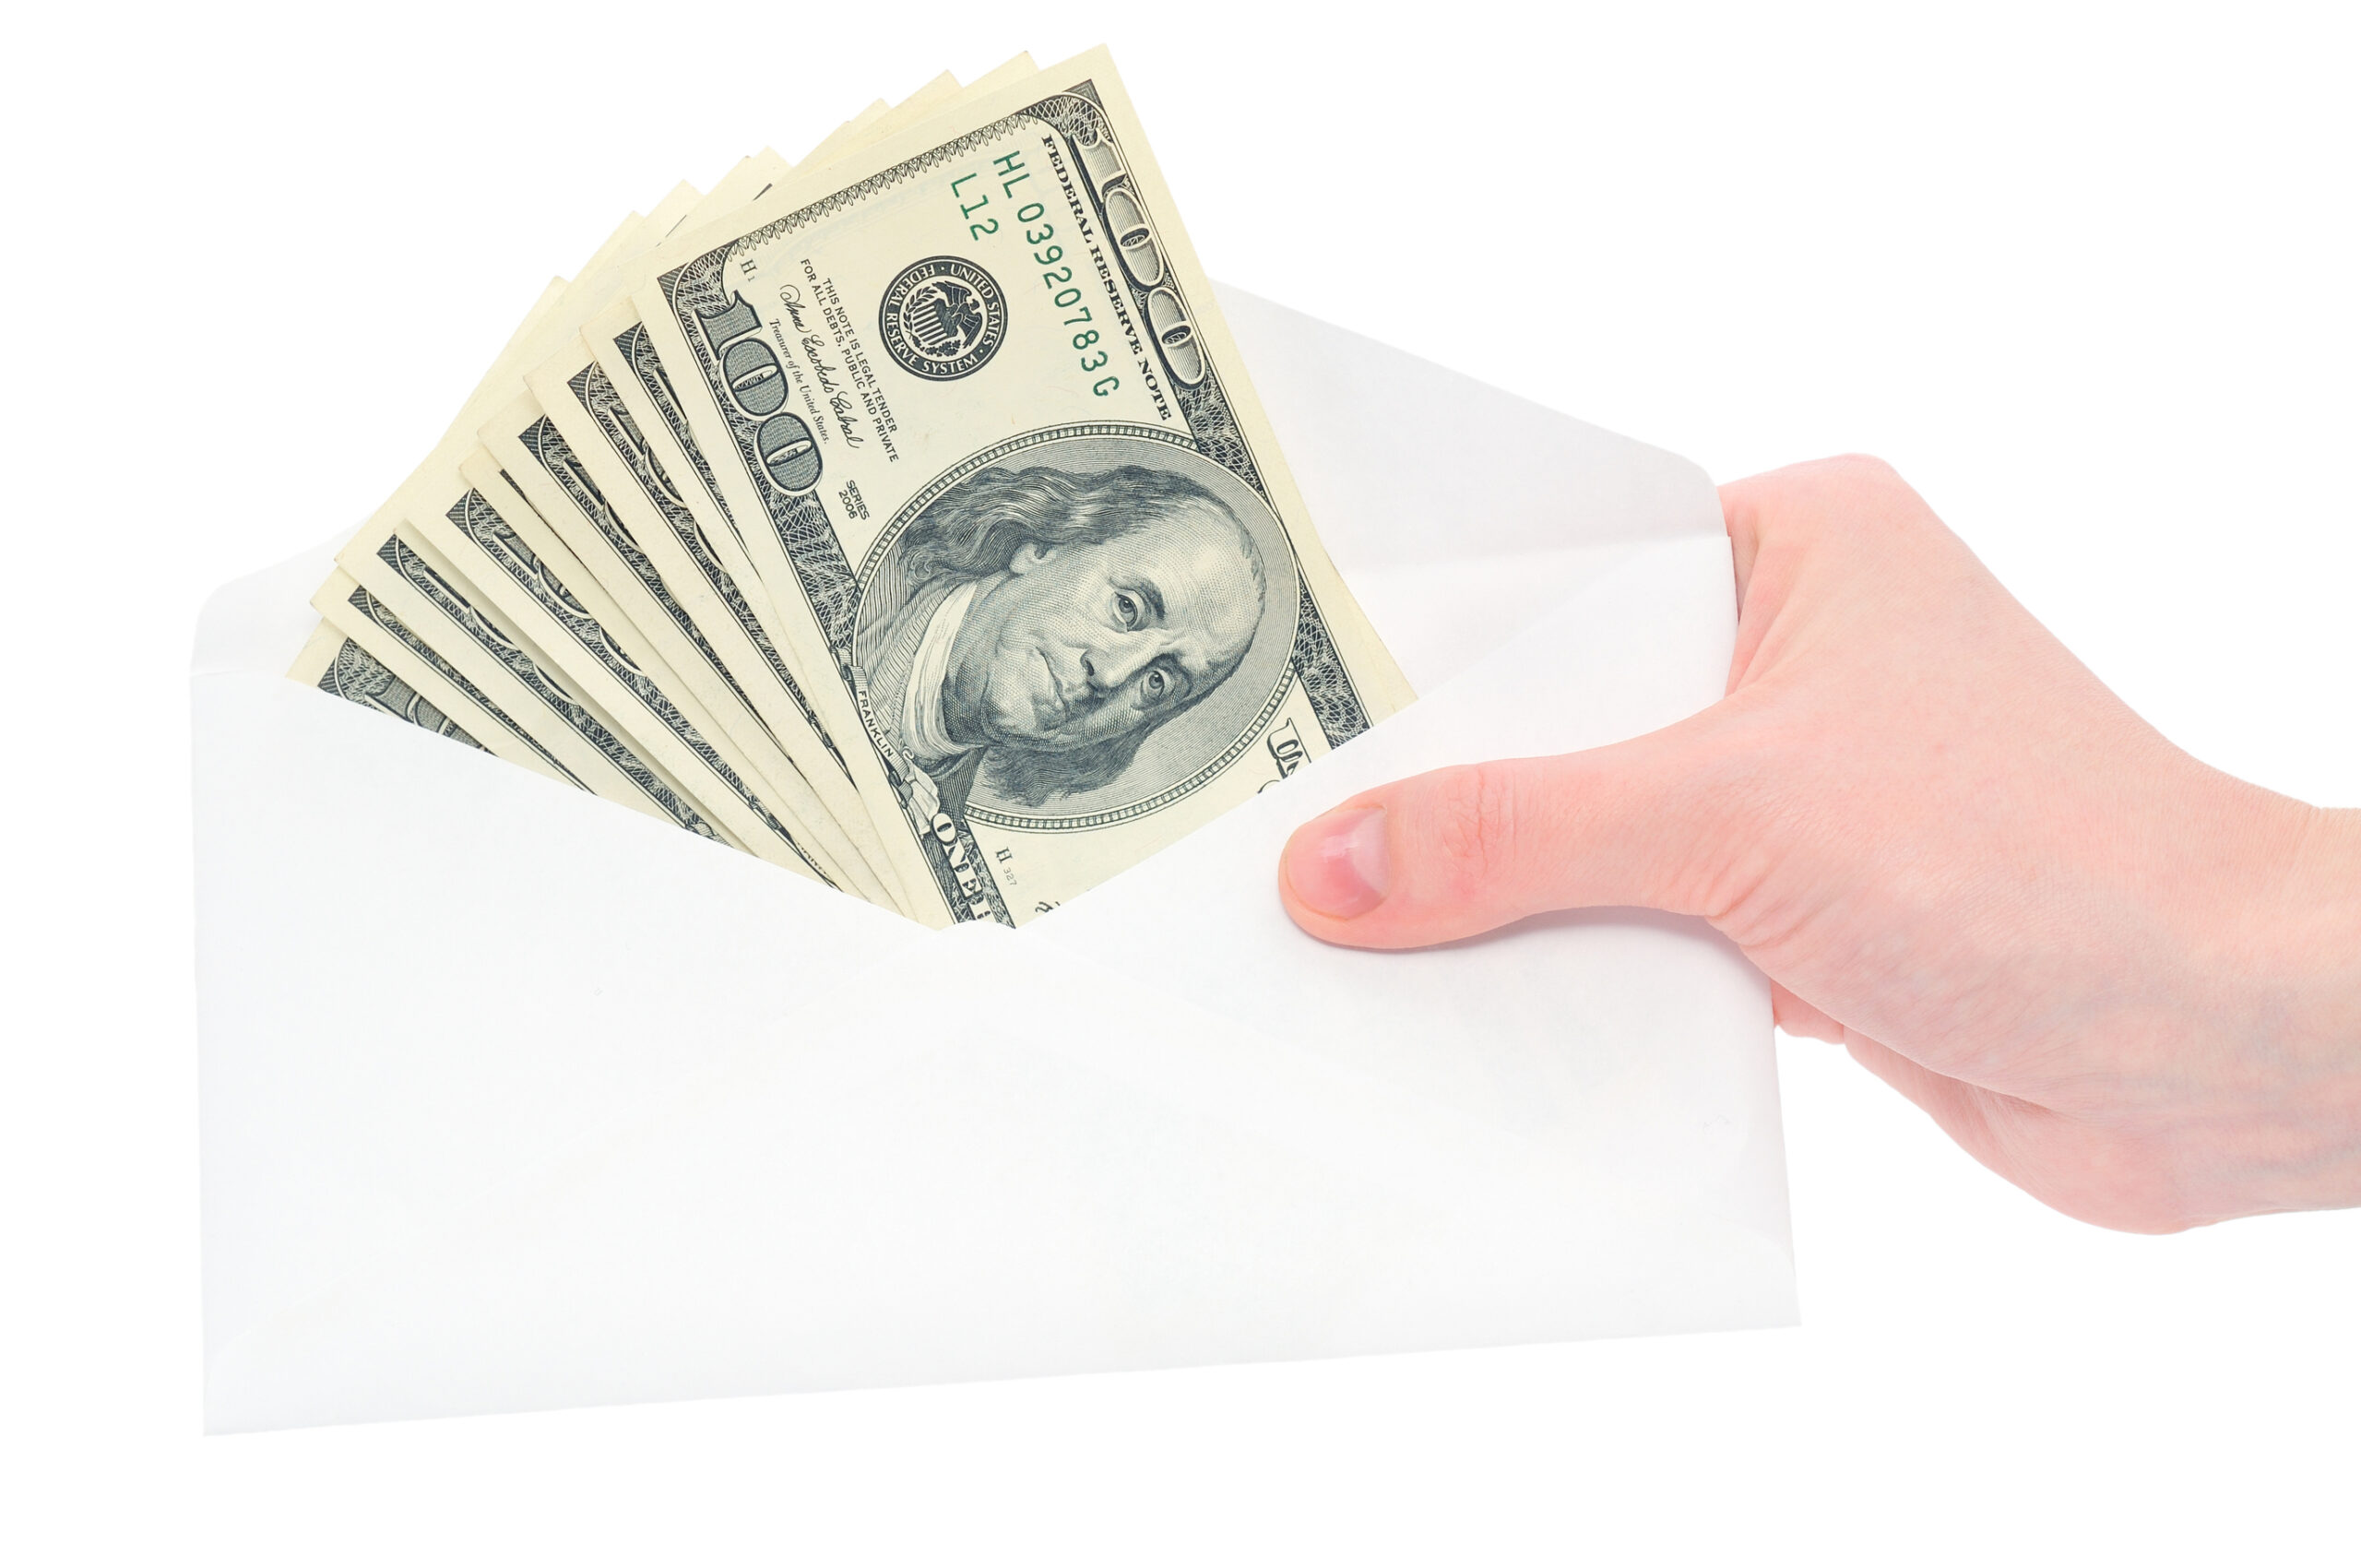 Cash envelop system-cash in an envelope